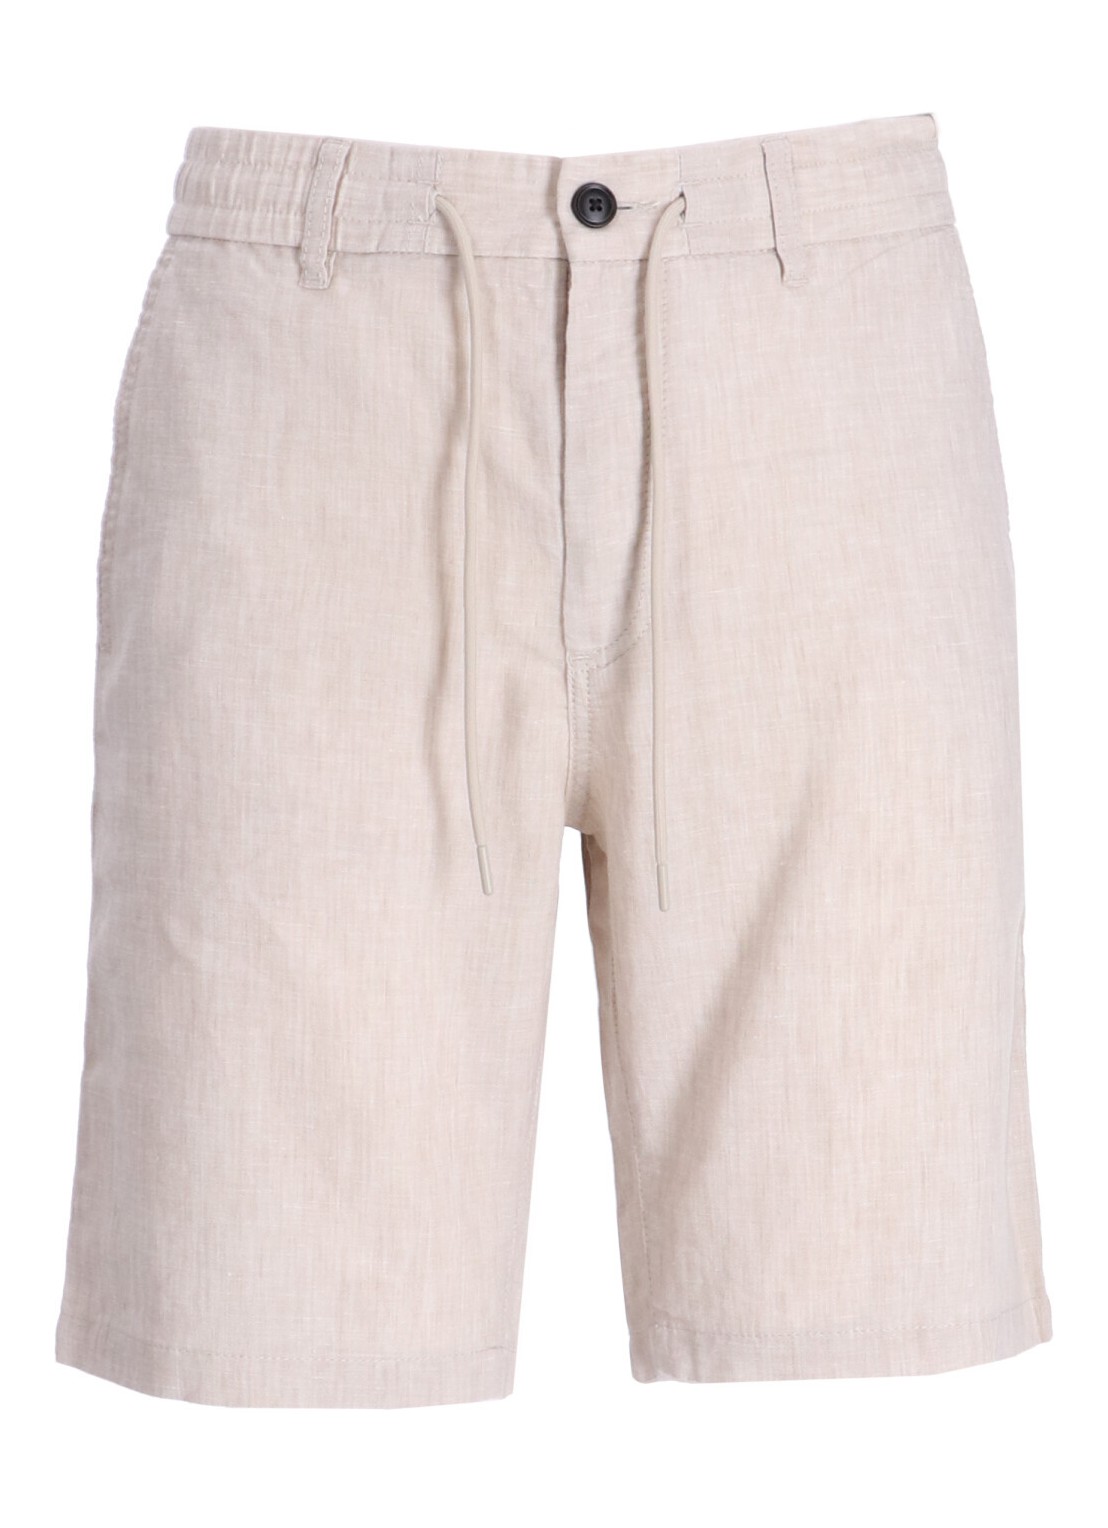 Pantalon corto boss short pant manchino-tapered-ds-1-s - 50513027 271 talla beige
 